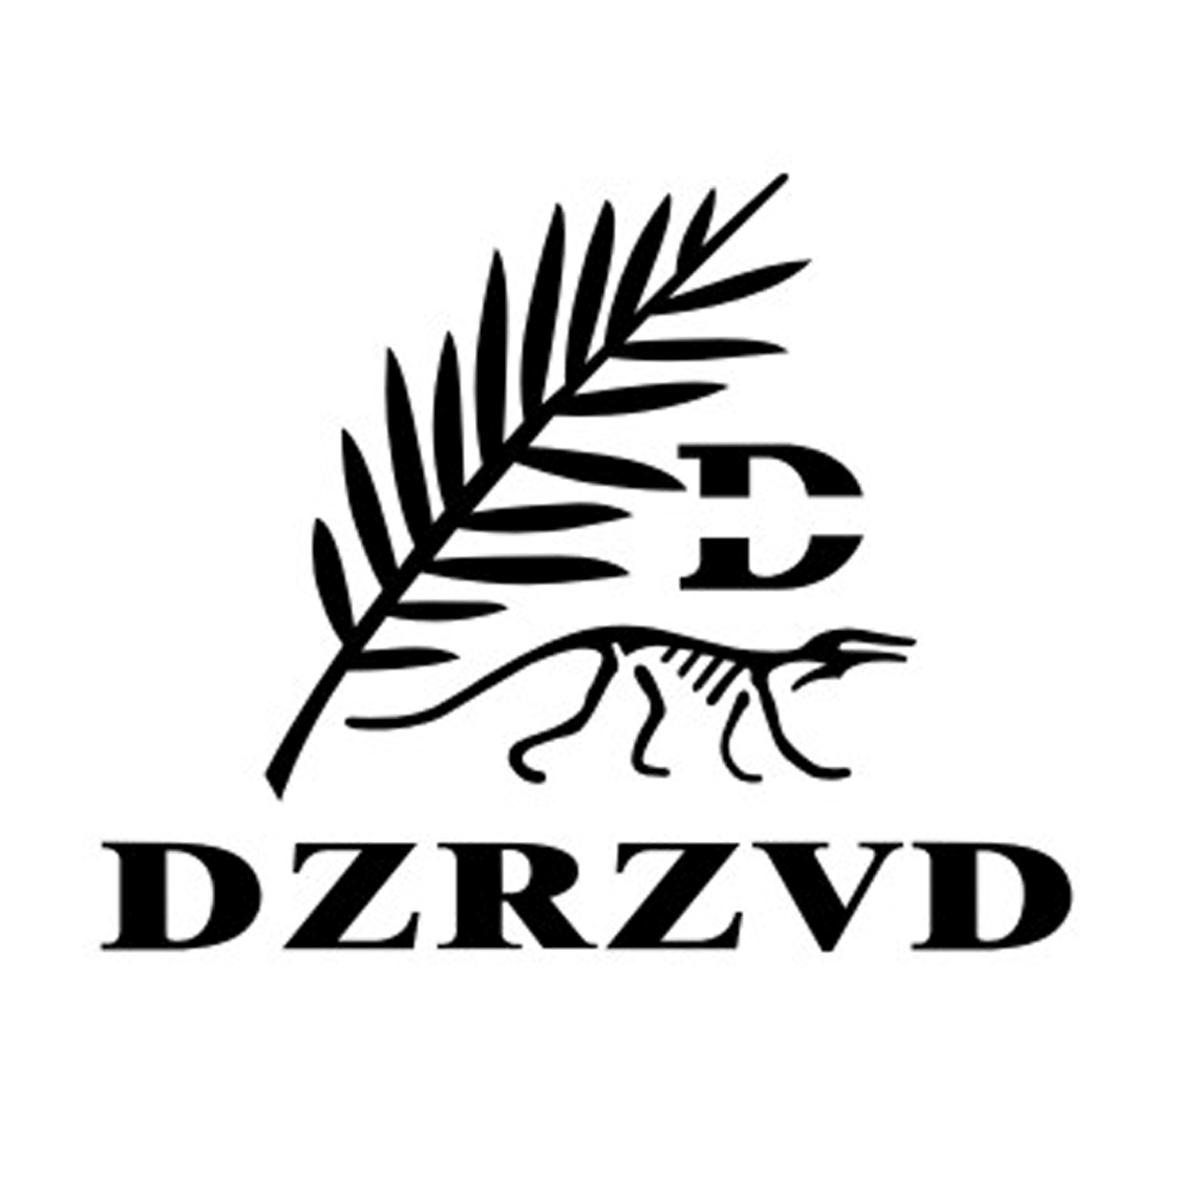 35类-广告销售DZRZVD D商标转让